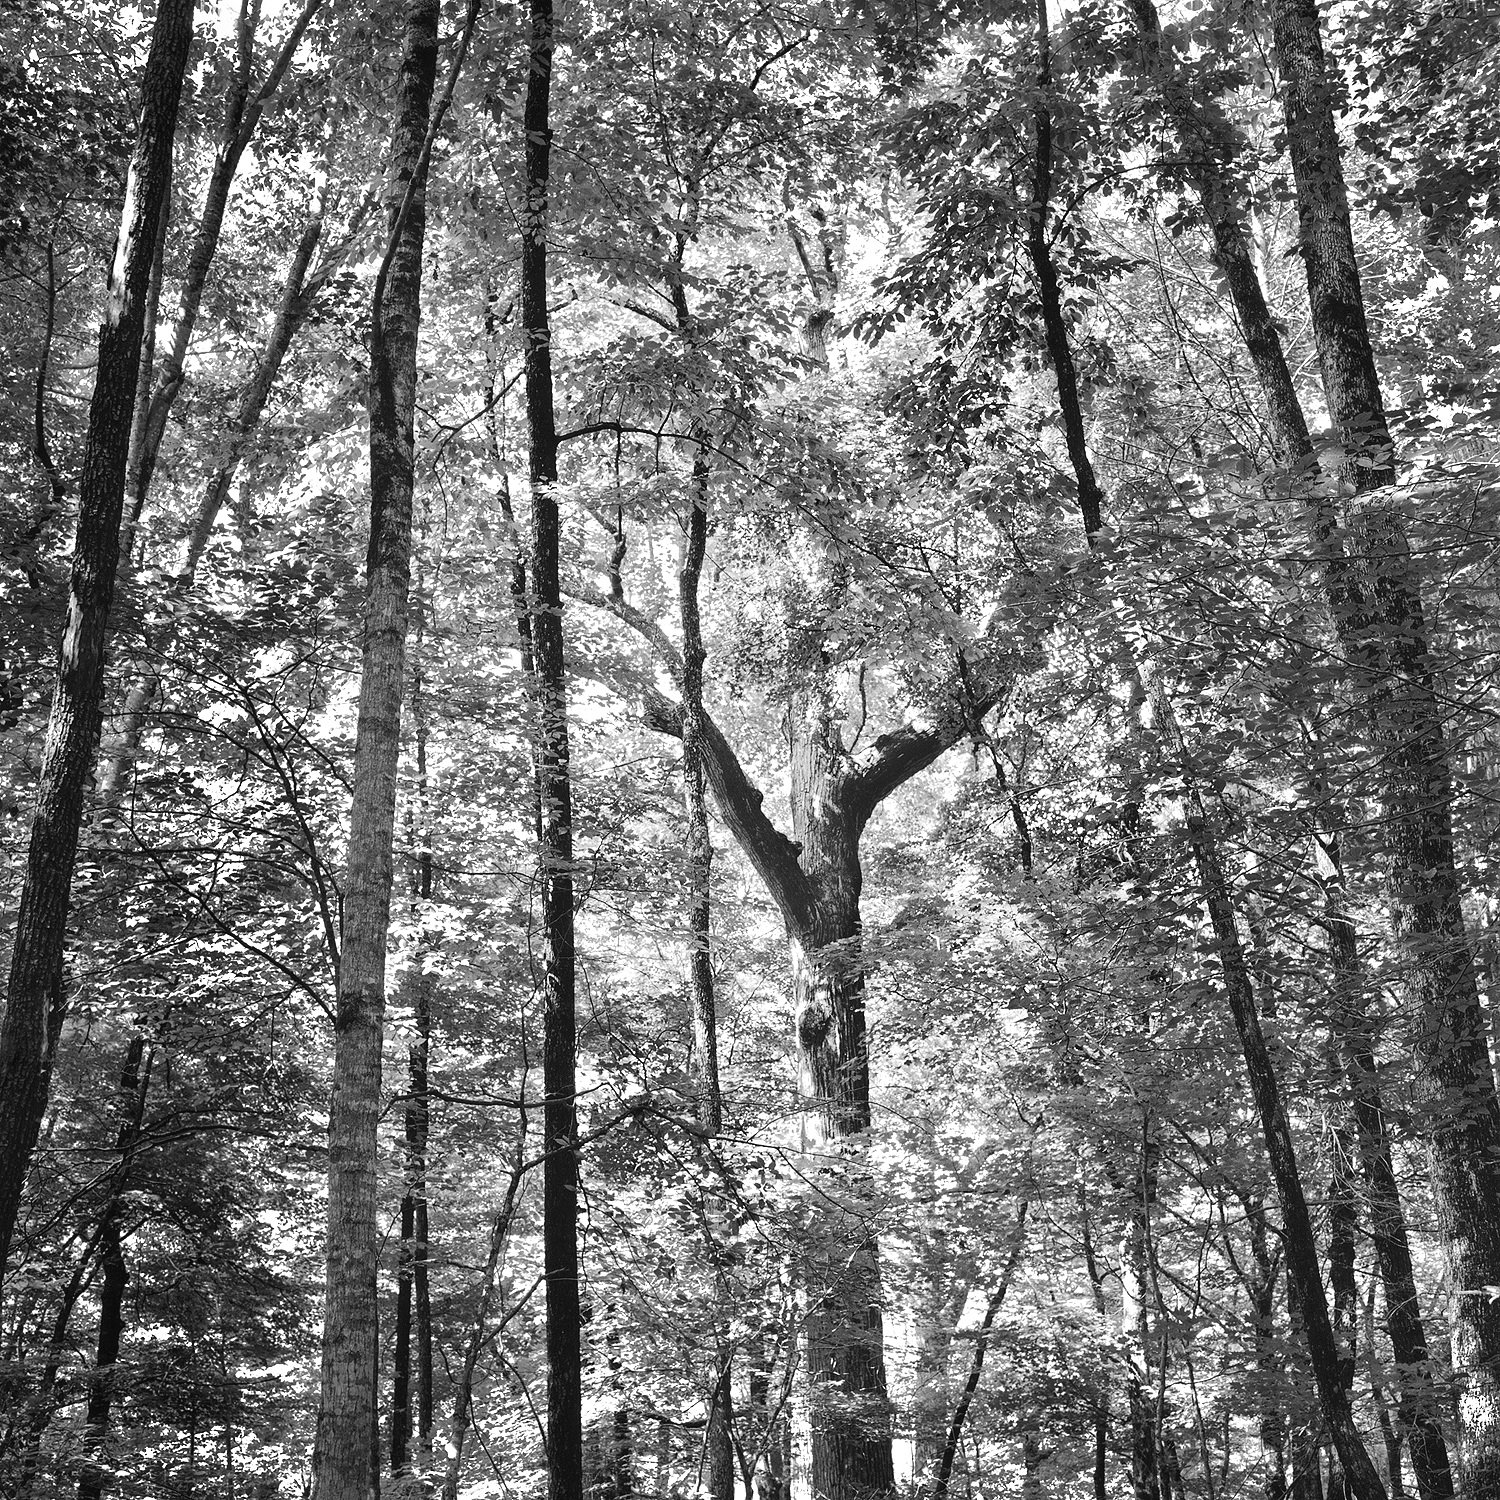 Joyce Kilmer Memorial Forest #4